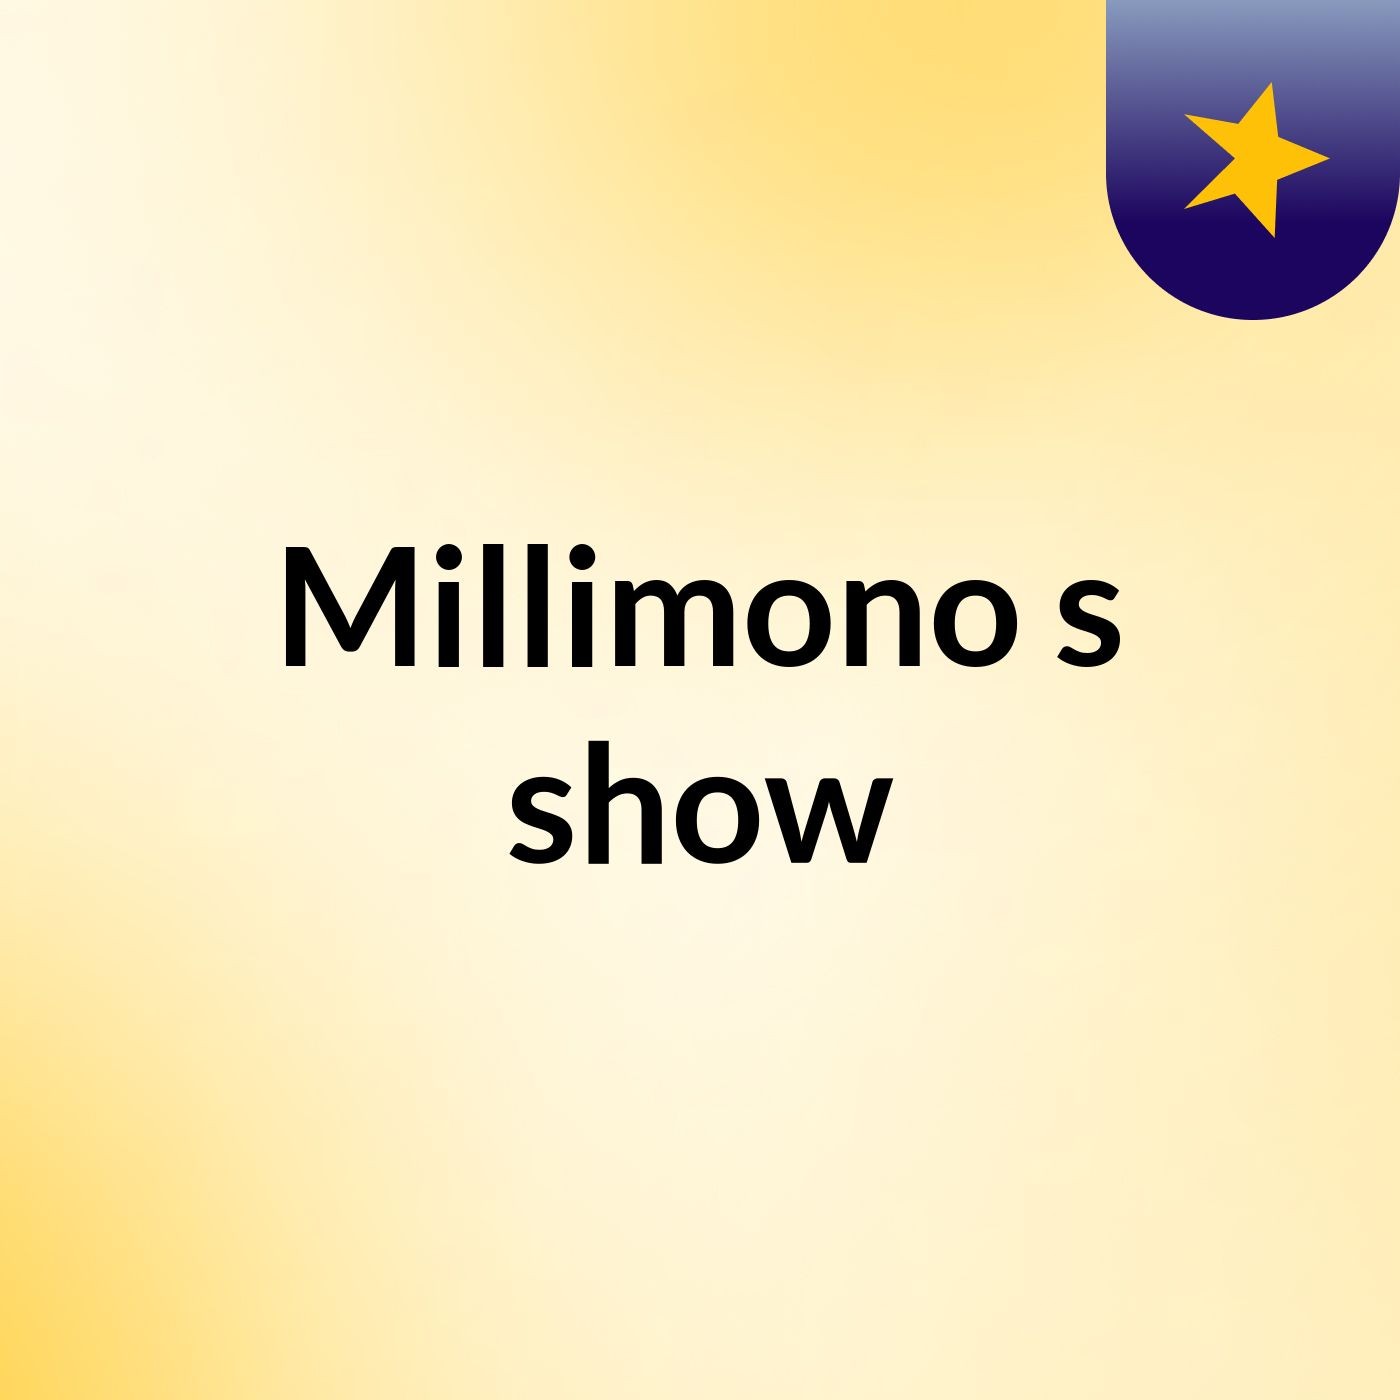 Millimono's show